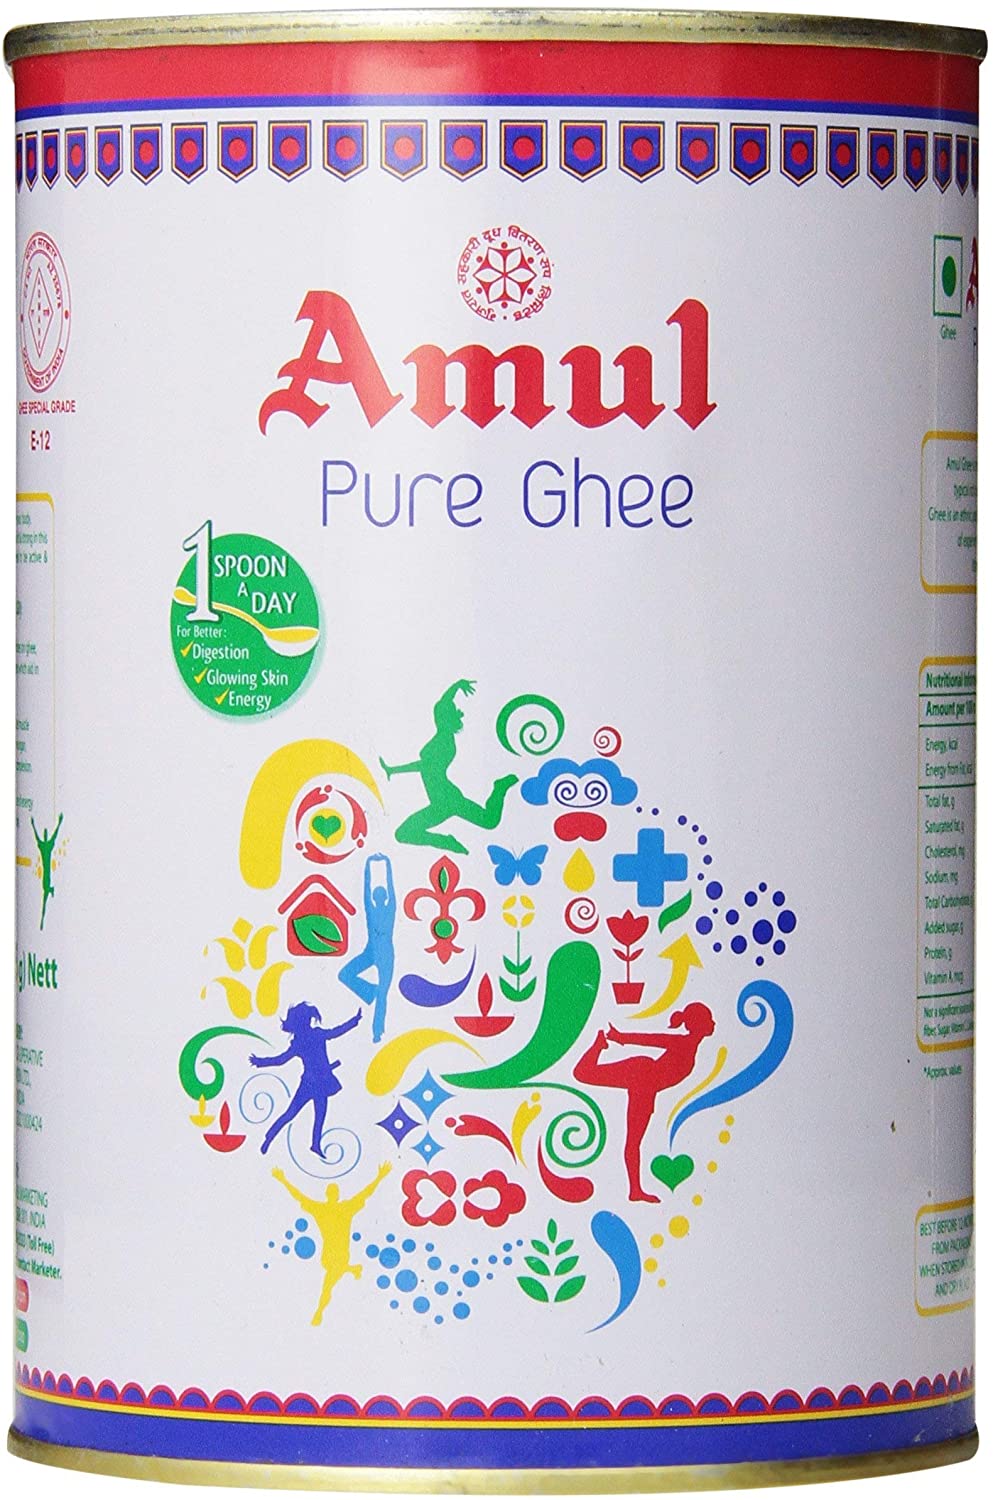 เพียว กี ตรา เอมมุล 905 กรัม Amul Pure Ghee 905 gram